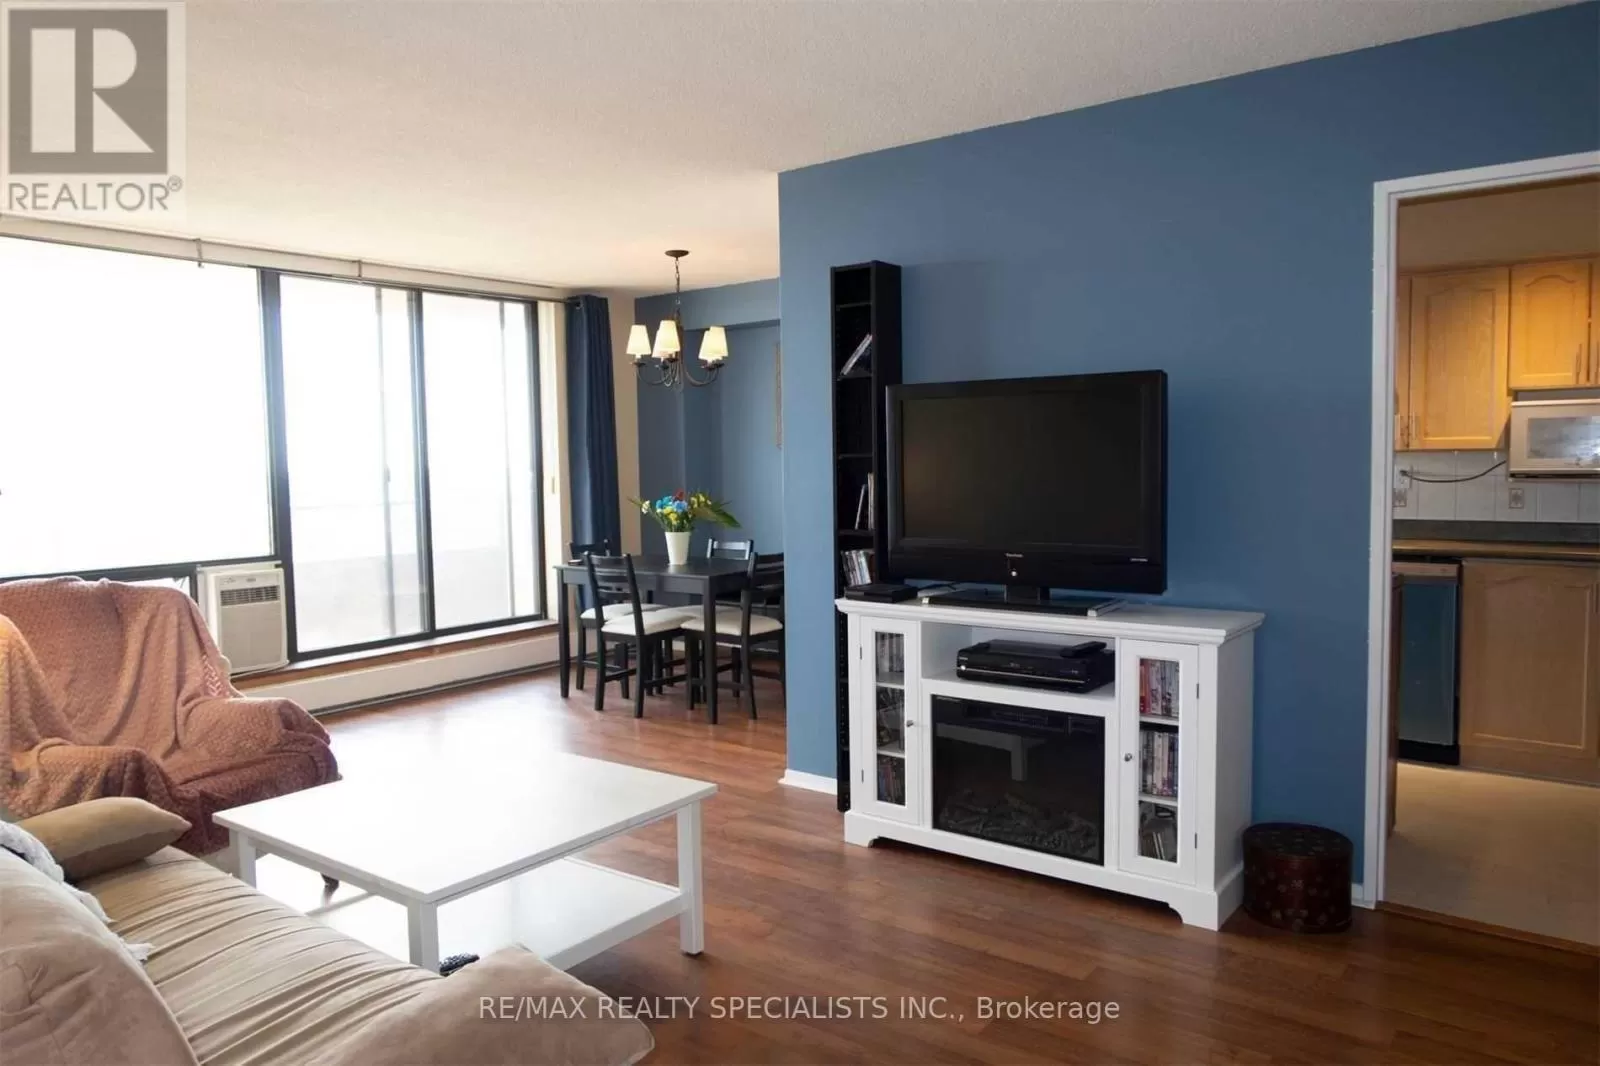 Apartment for rent: #1109 -2929 Aquitaine Ave, Mississauga, Ontario L5N 2C7